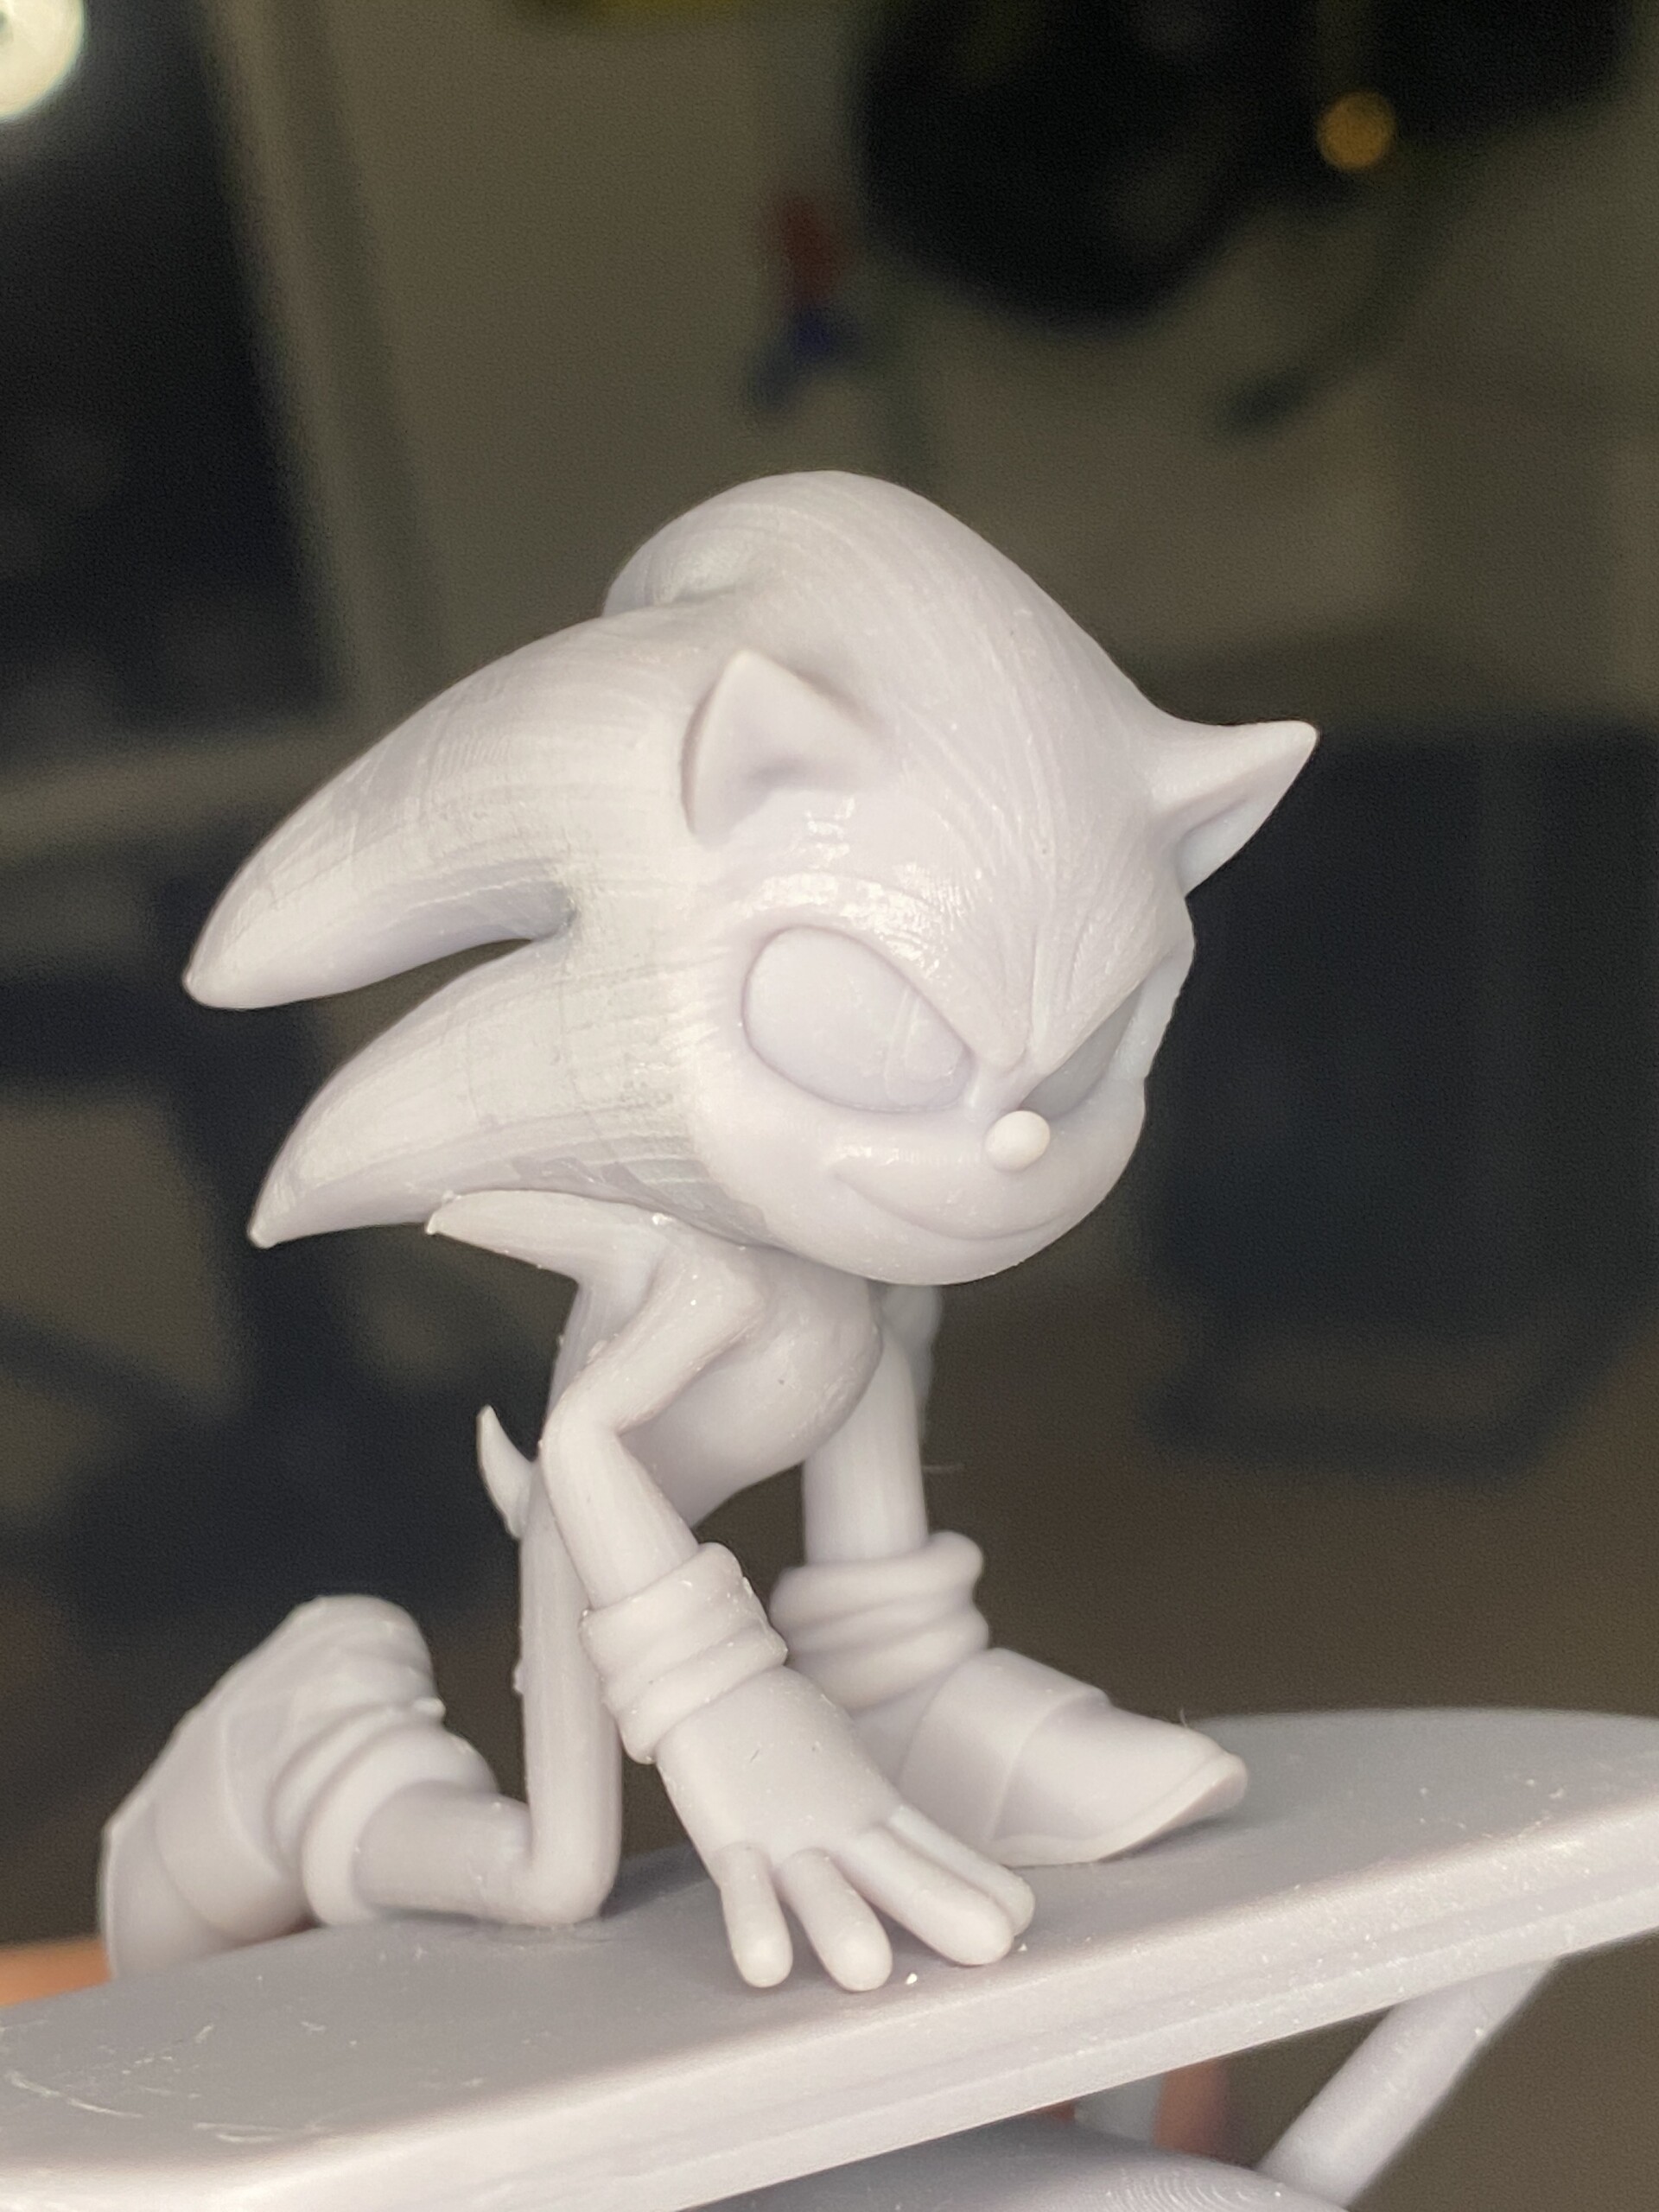 Shadow - Sonic The Hedgehog 2 Fanart 3D Print Model by Sinh Nguyen